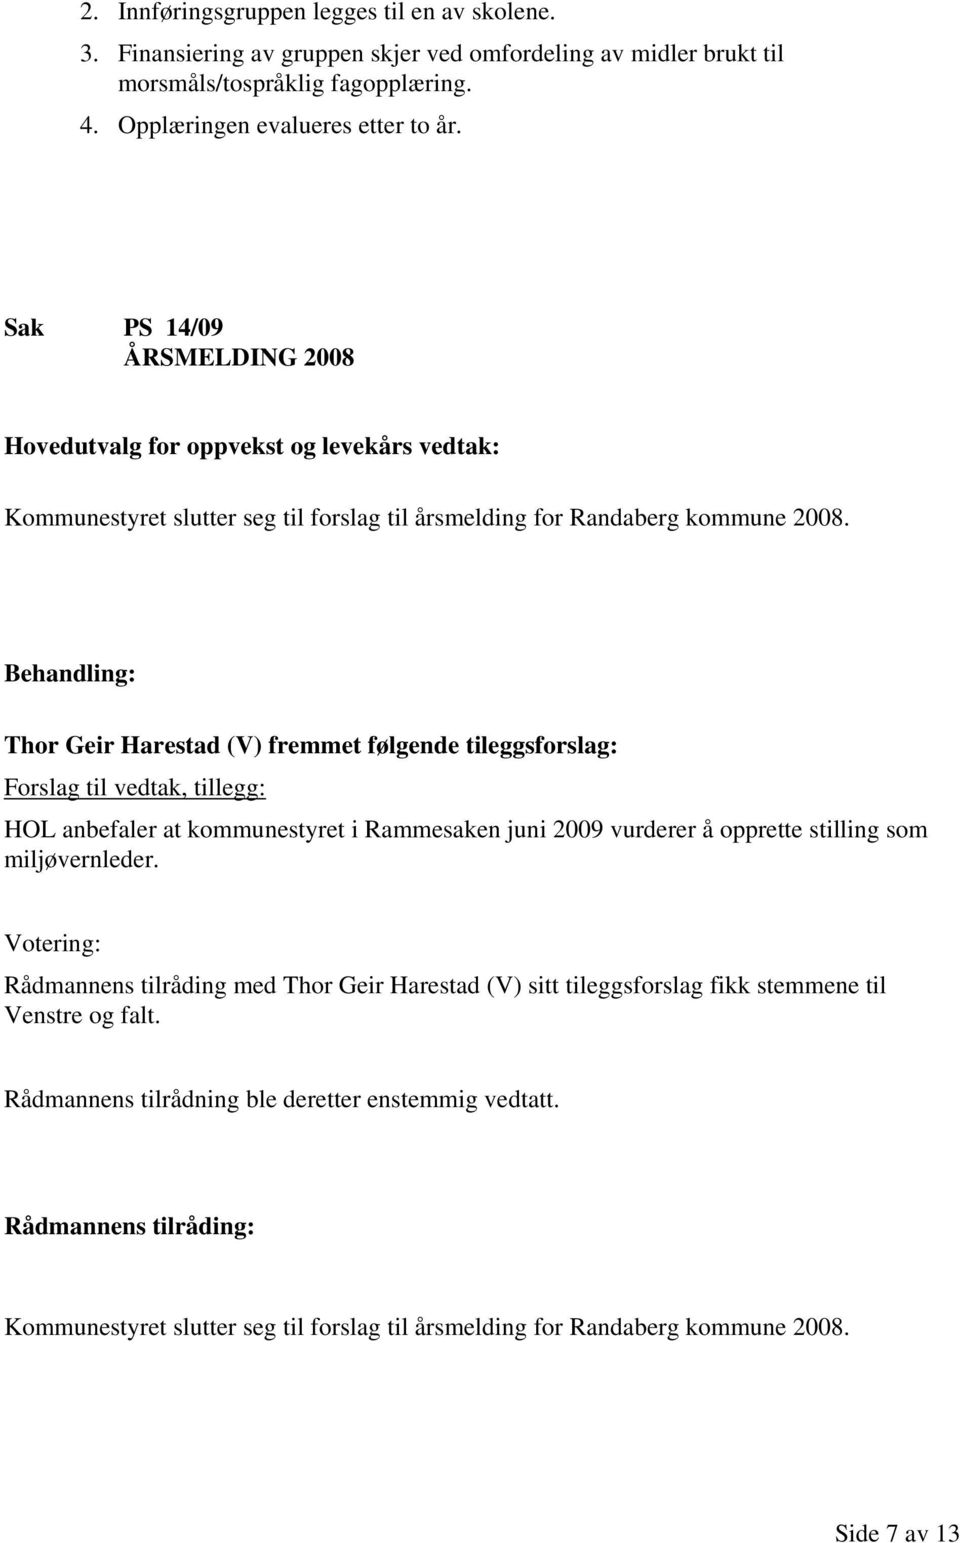 Thor Geir Harestad (V) fremmet følgende tileggsforslag: Forslag til vedtak, tillegg: HOL anbefaler at kommunestyret i Rammesaken juni 2009 vurderer å opprette stilling som miljøvernleder.